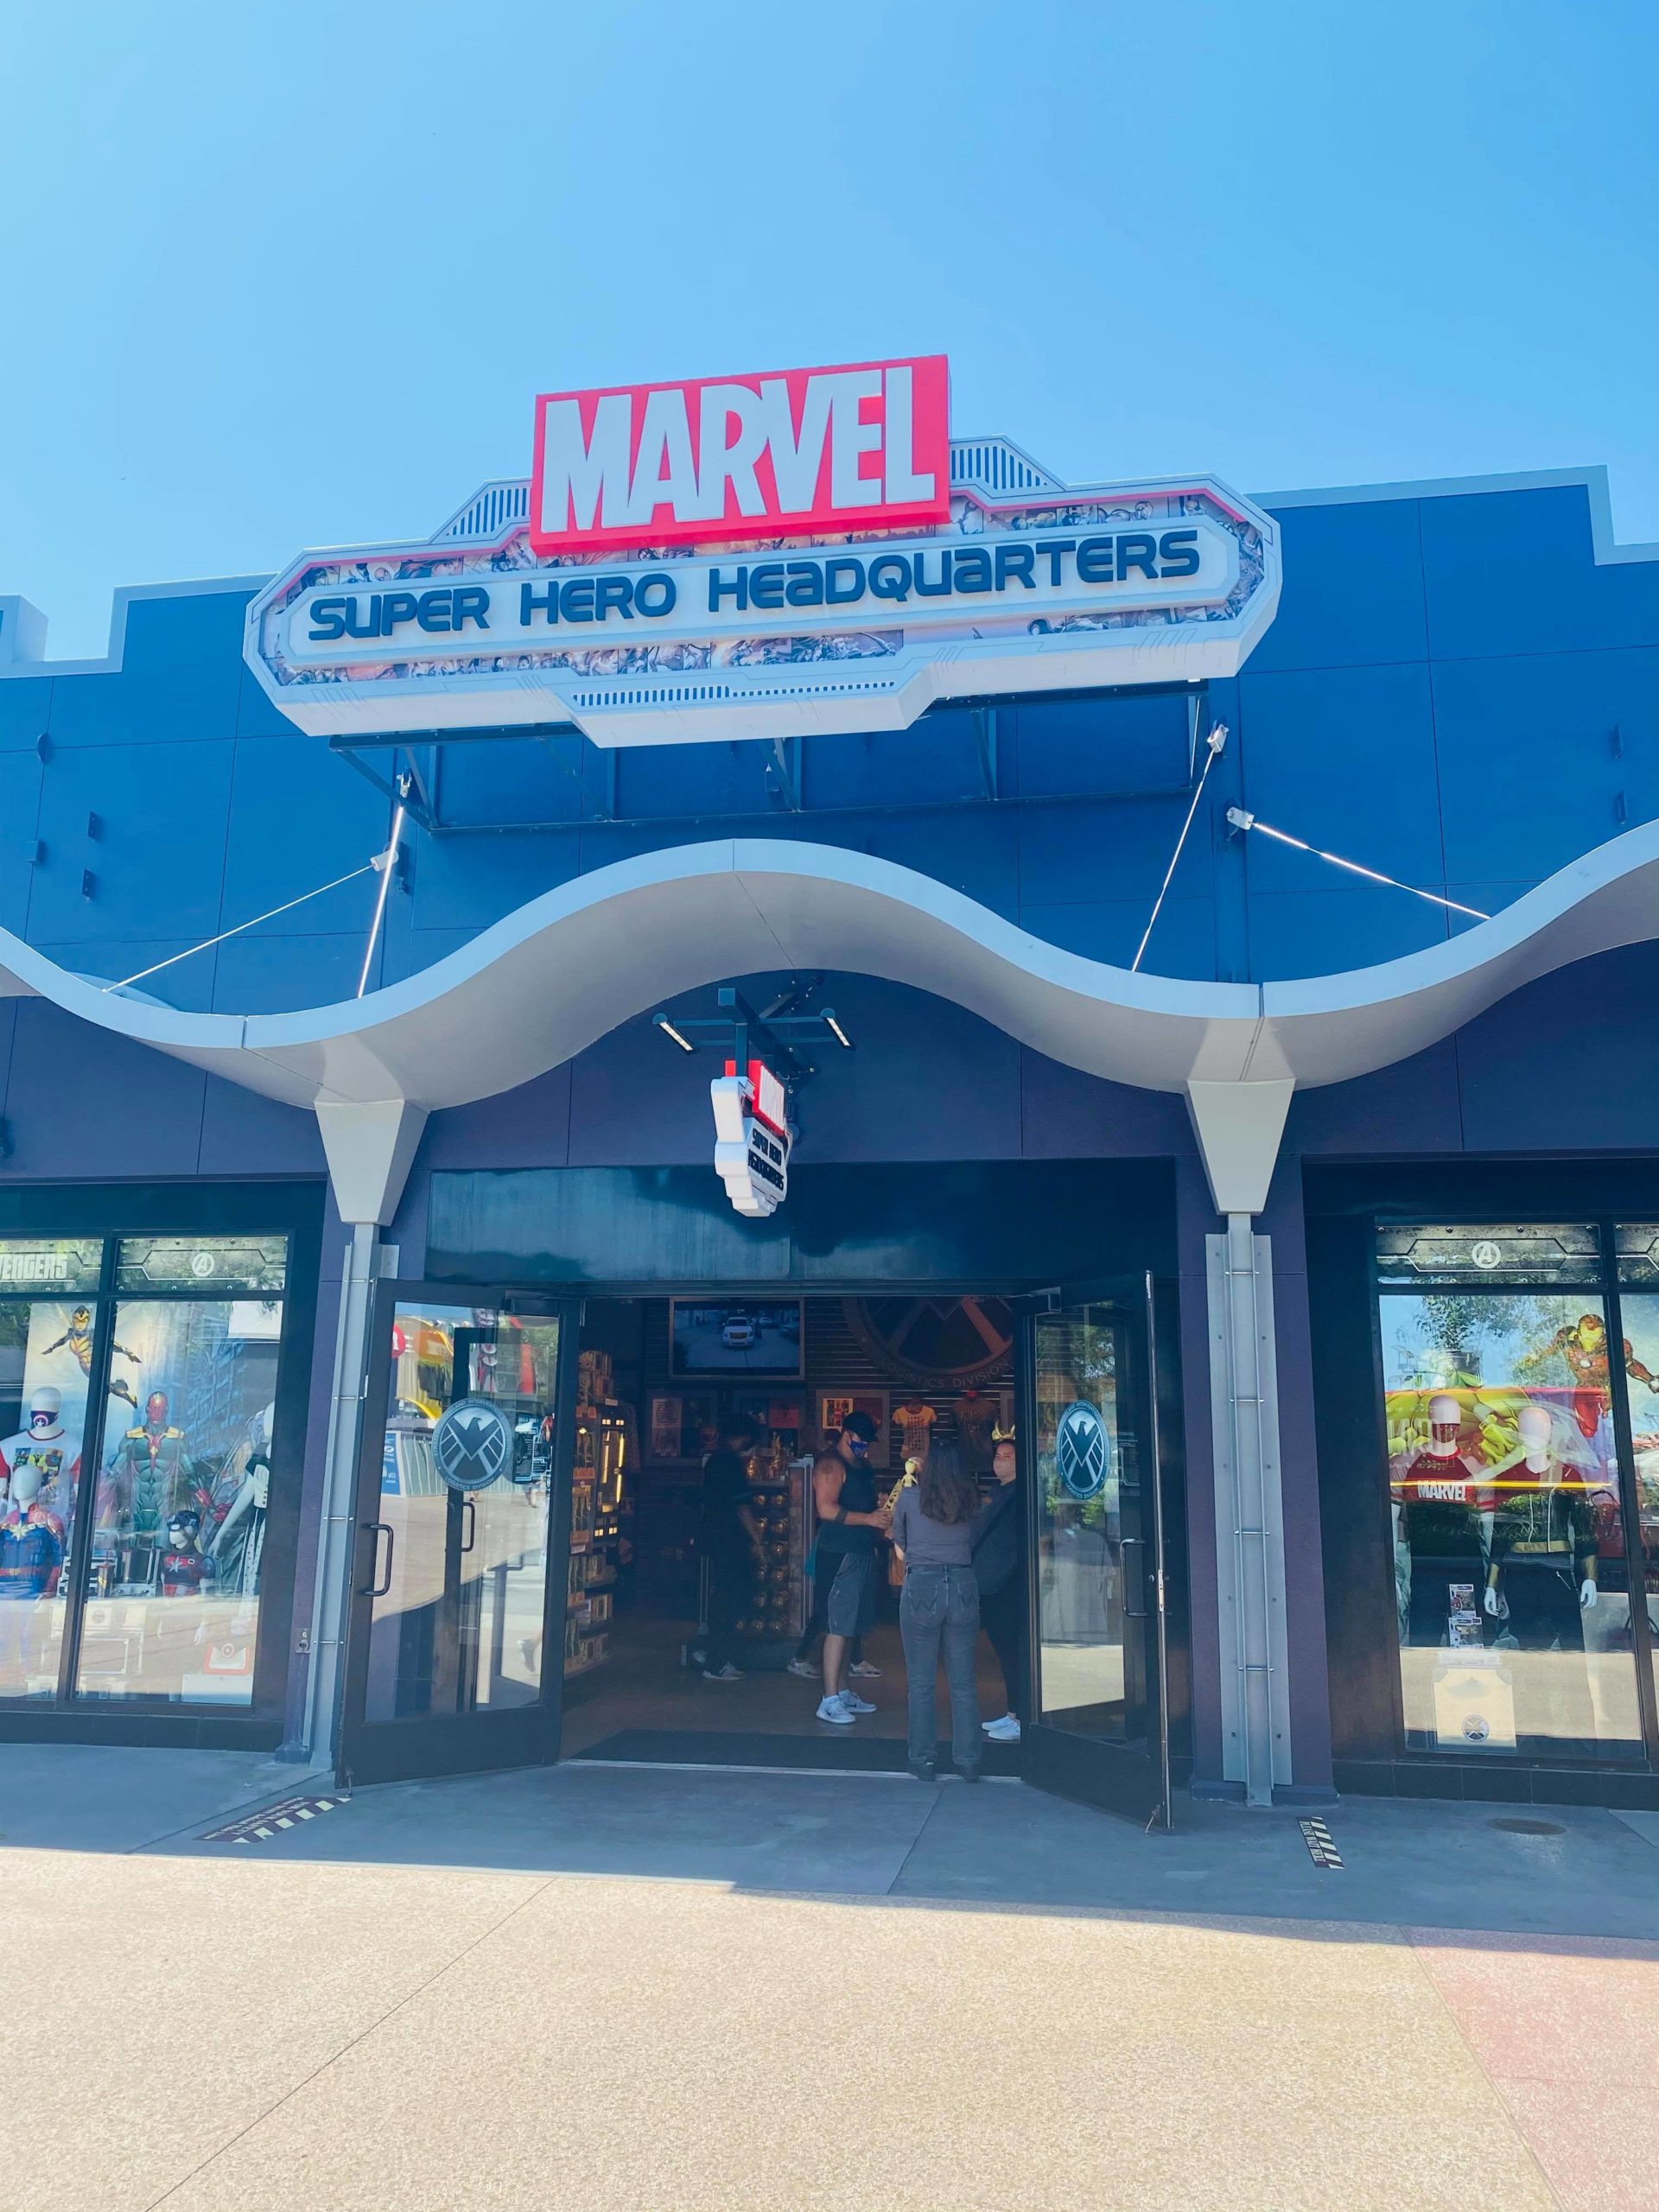 Marvel Super Hero Headquarters